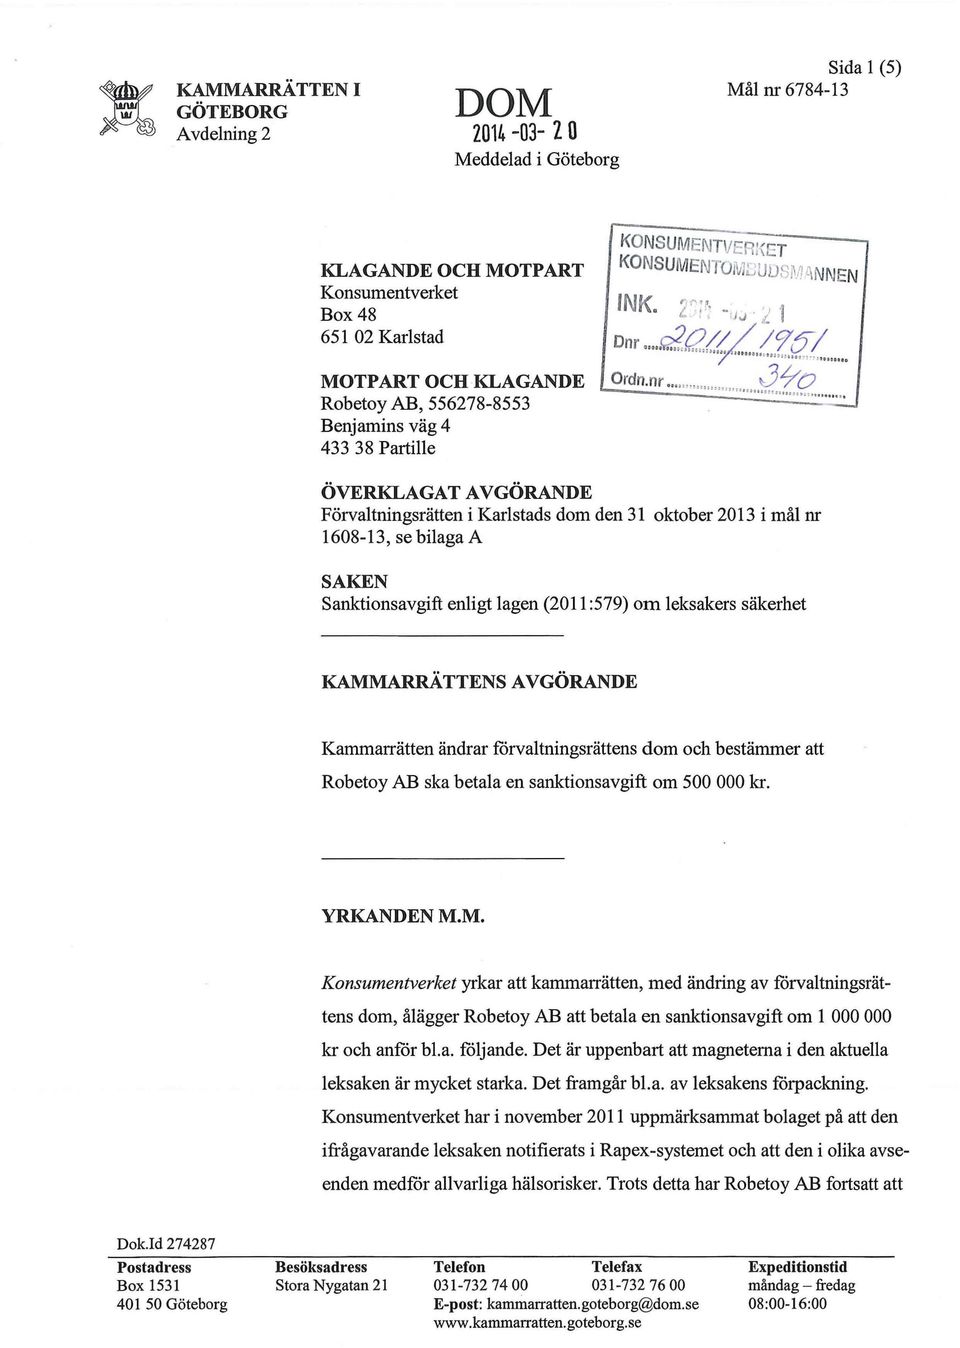 . 8; ÖVERKLAGAT AVGÖRANDE Förvaltningsrätten i Karlstads dom den 31 oktober 2013 i mål nr 1608-13, se bilaga A SAKEN Sanktionsavgift enligt lagen (2011:579) om leksakers säkerhet KAMMARRATTENS